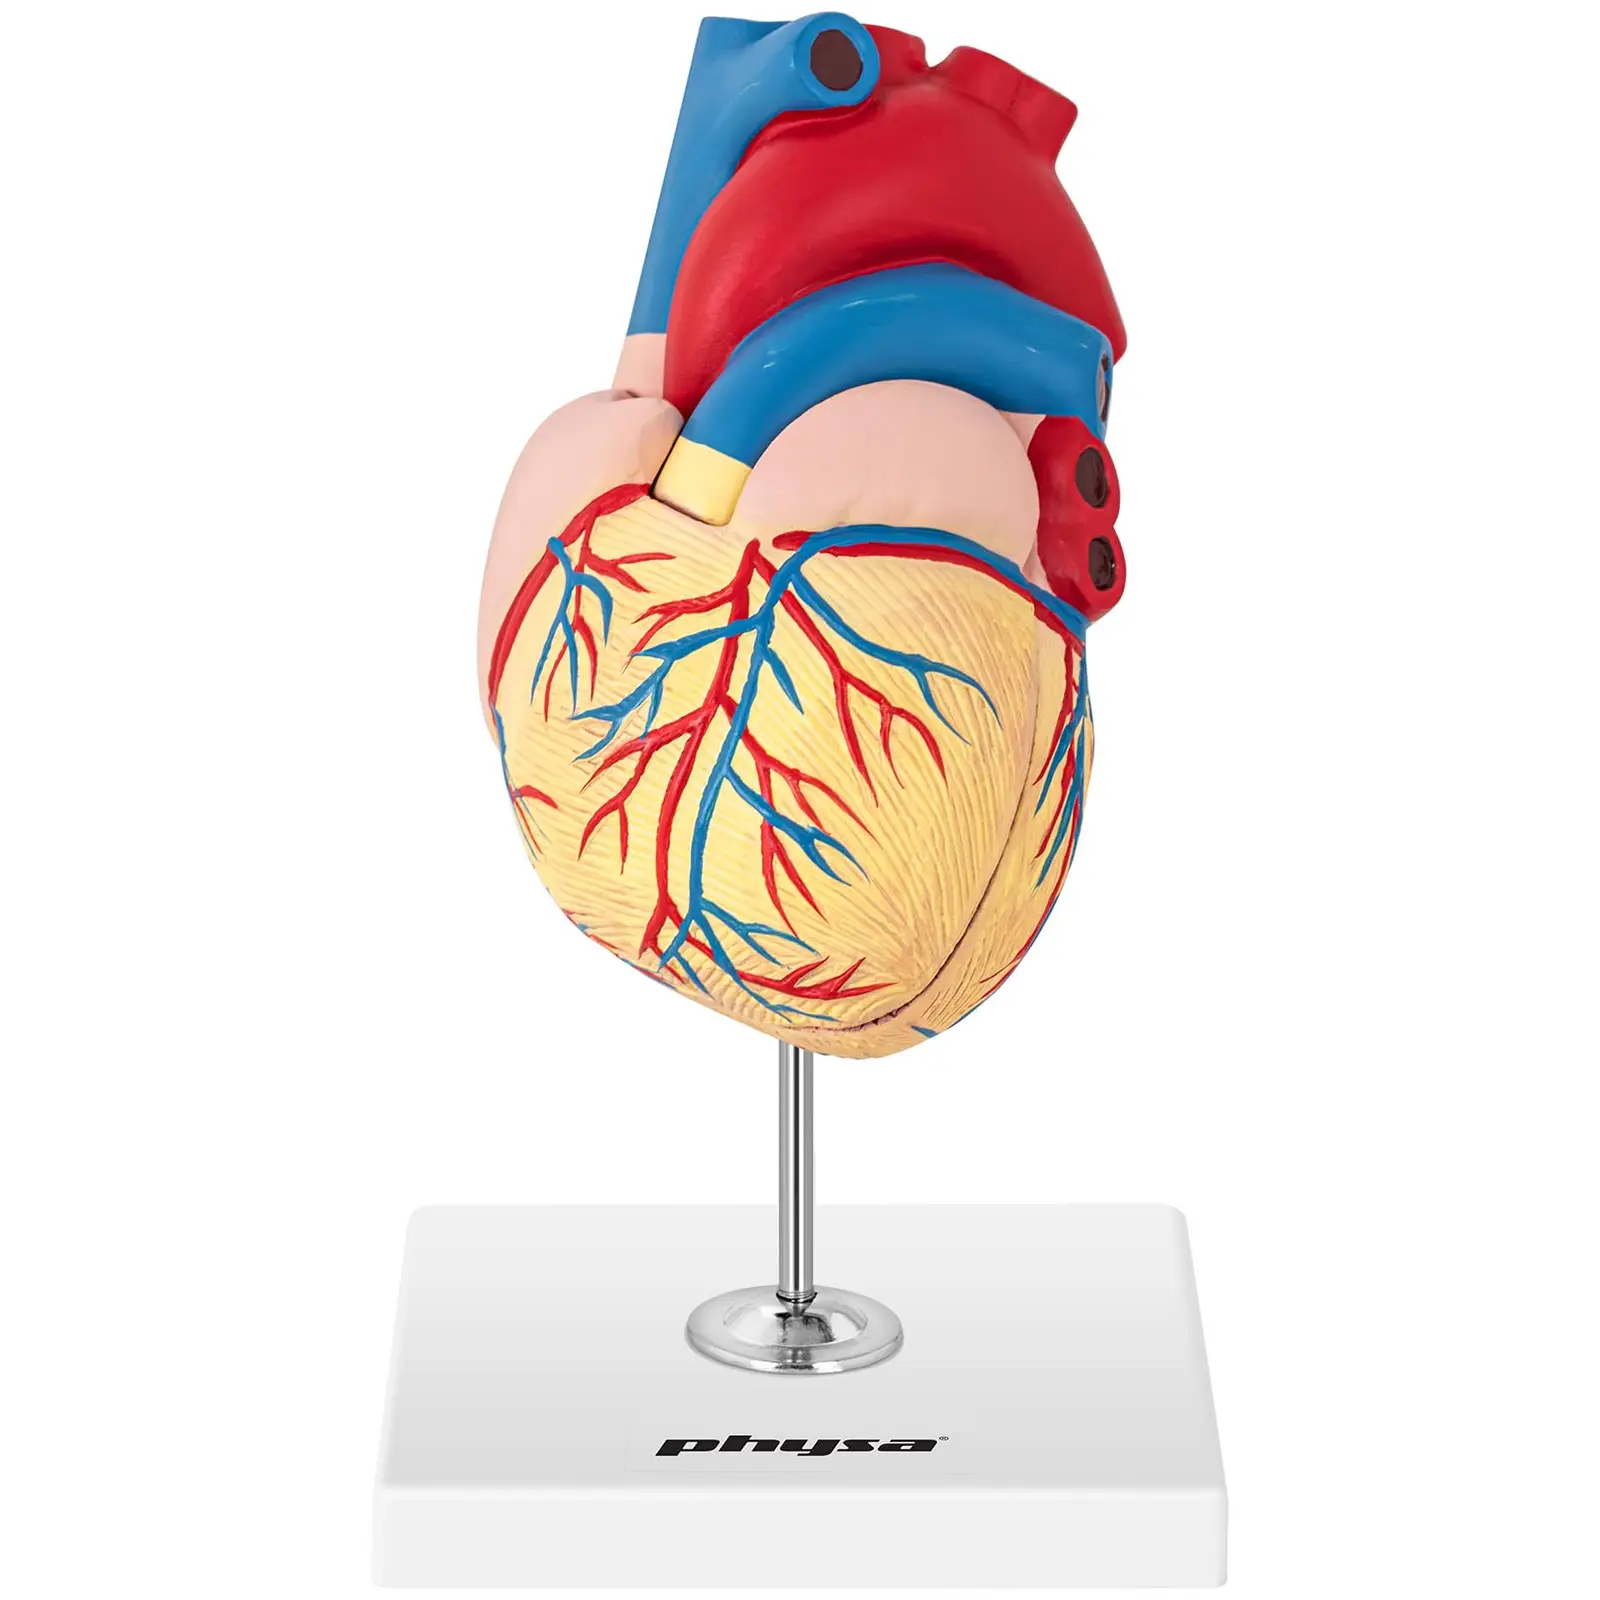 Modelo de corazón - desmontable en 2 piezas - tamaño original